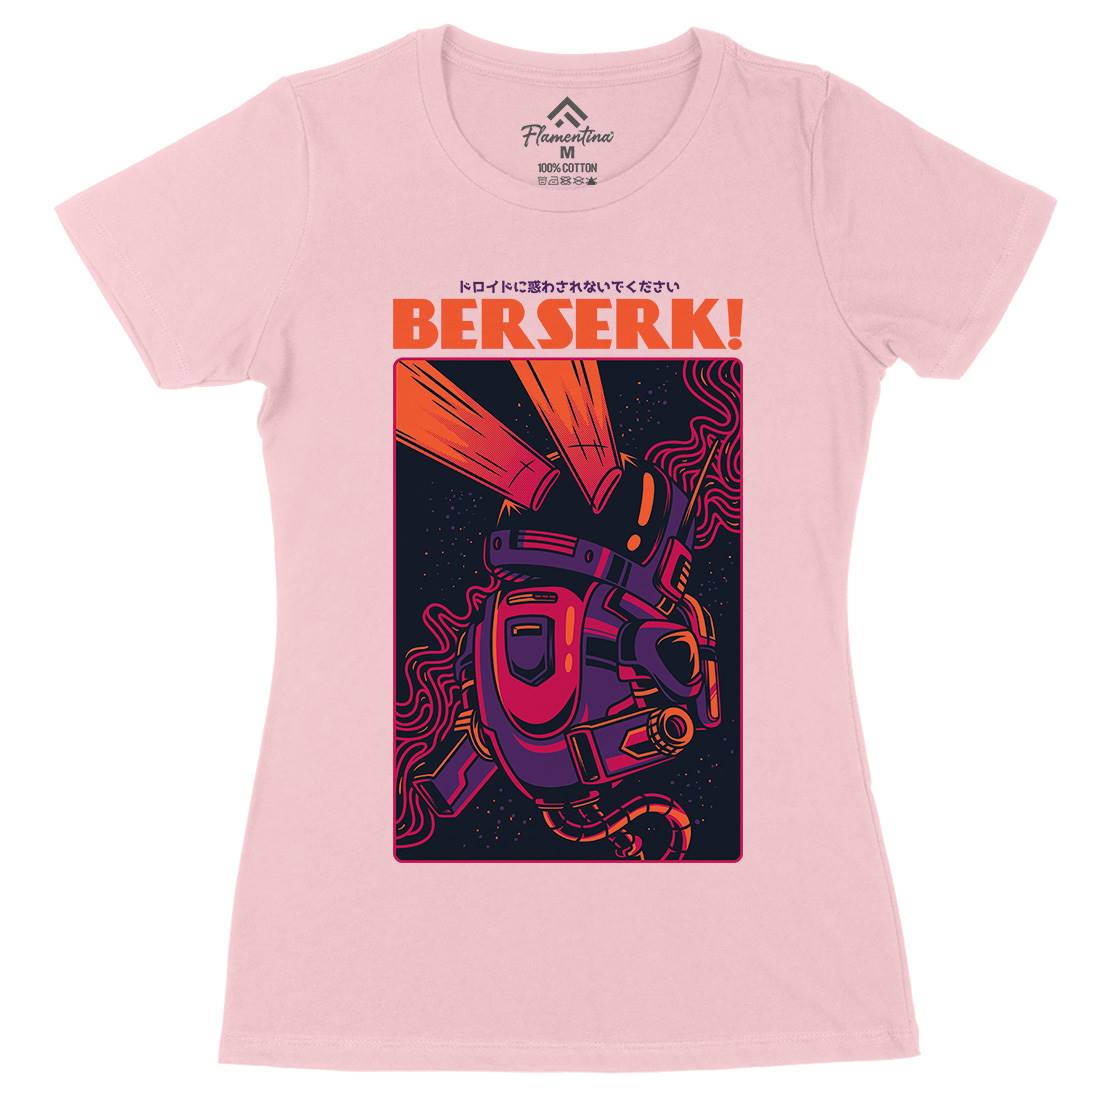 Berserk Womens Organic Crew Neck T-Shirt Space D713